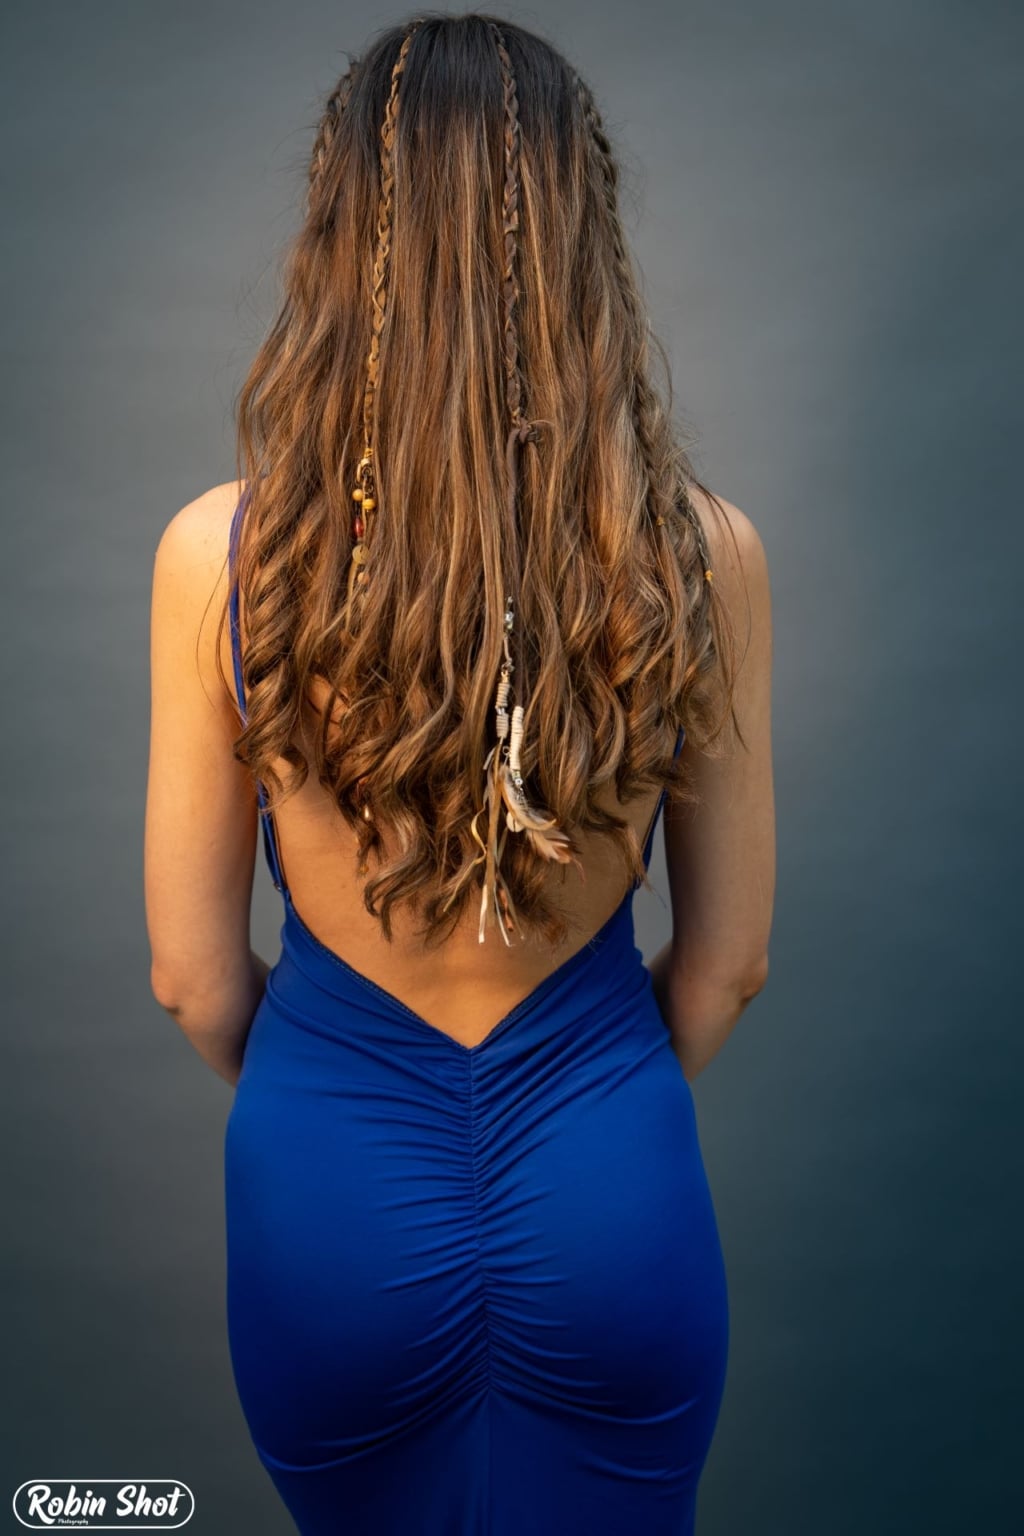 Kobieta z długimi brązowymi włosami nosi skórzane tasiemki Hairdreams.